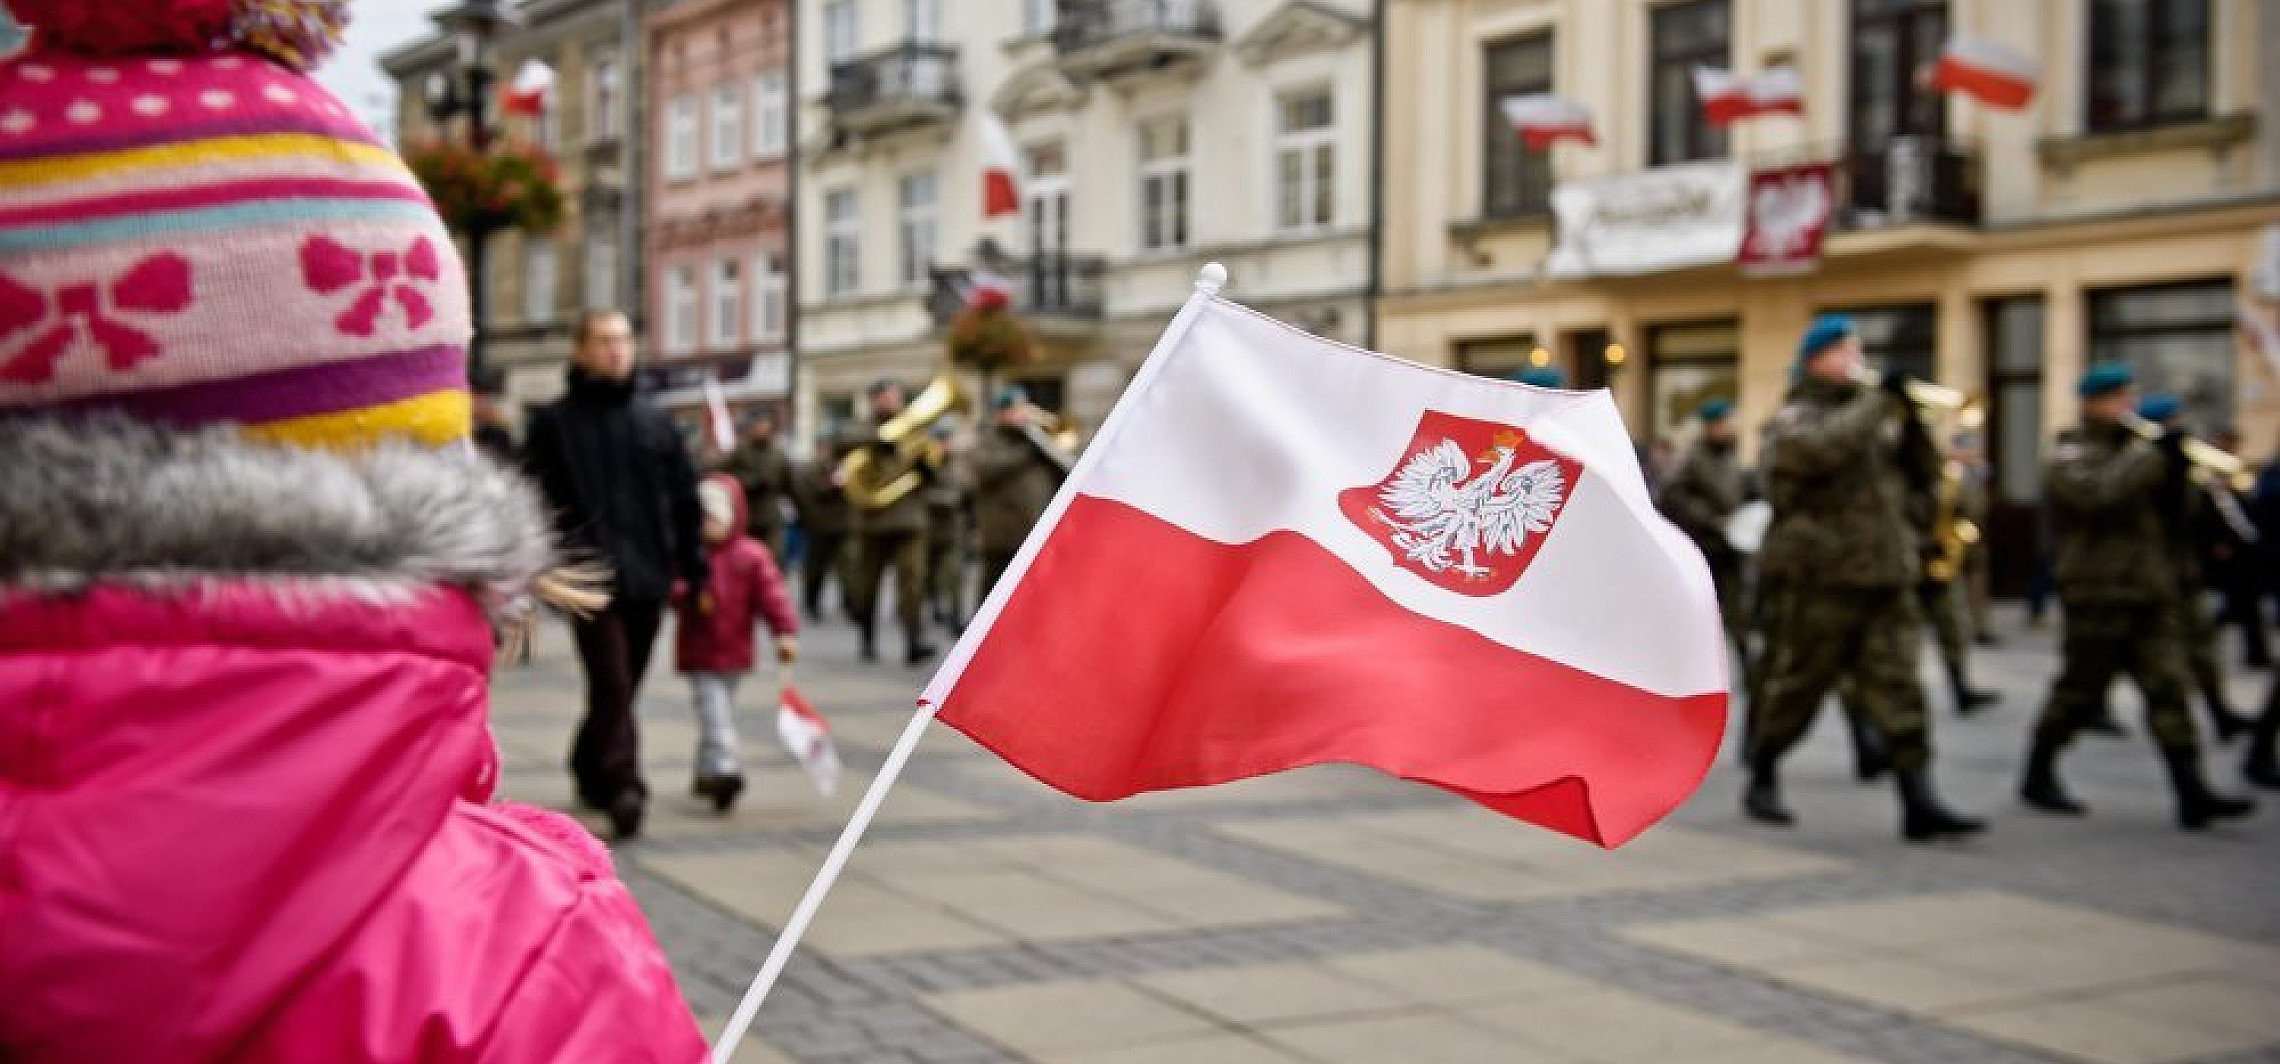 Kraj - Obchody 101. rocznicy niepodległości Polski - hymn, festiwal i koncert